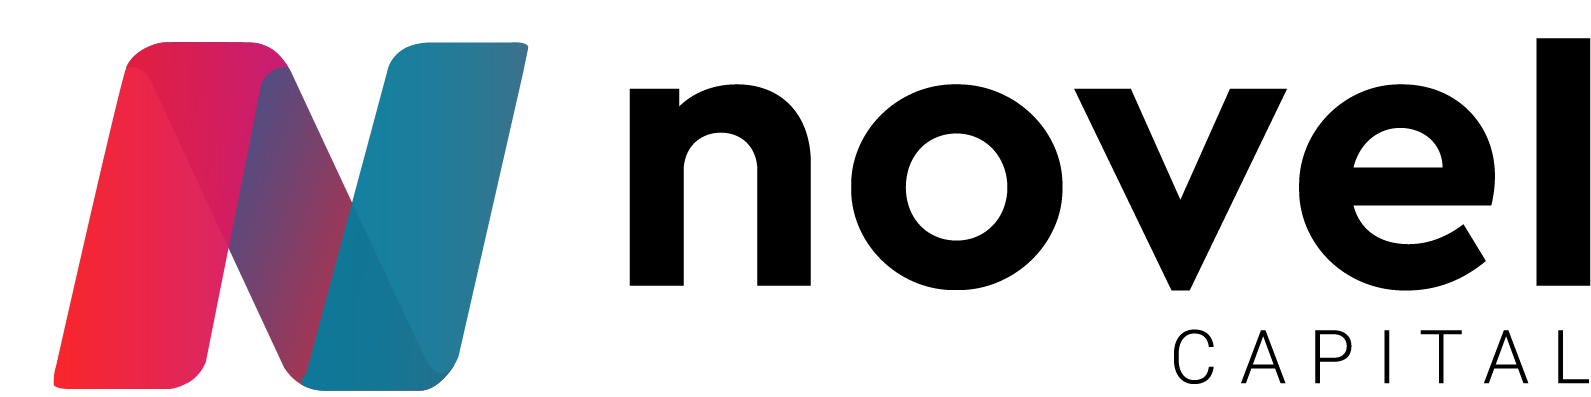 Novel Capital Logo - Black Letters - Final.png